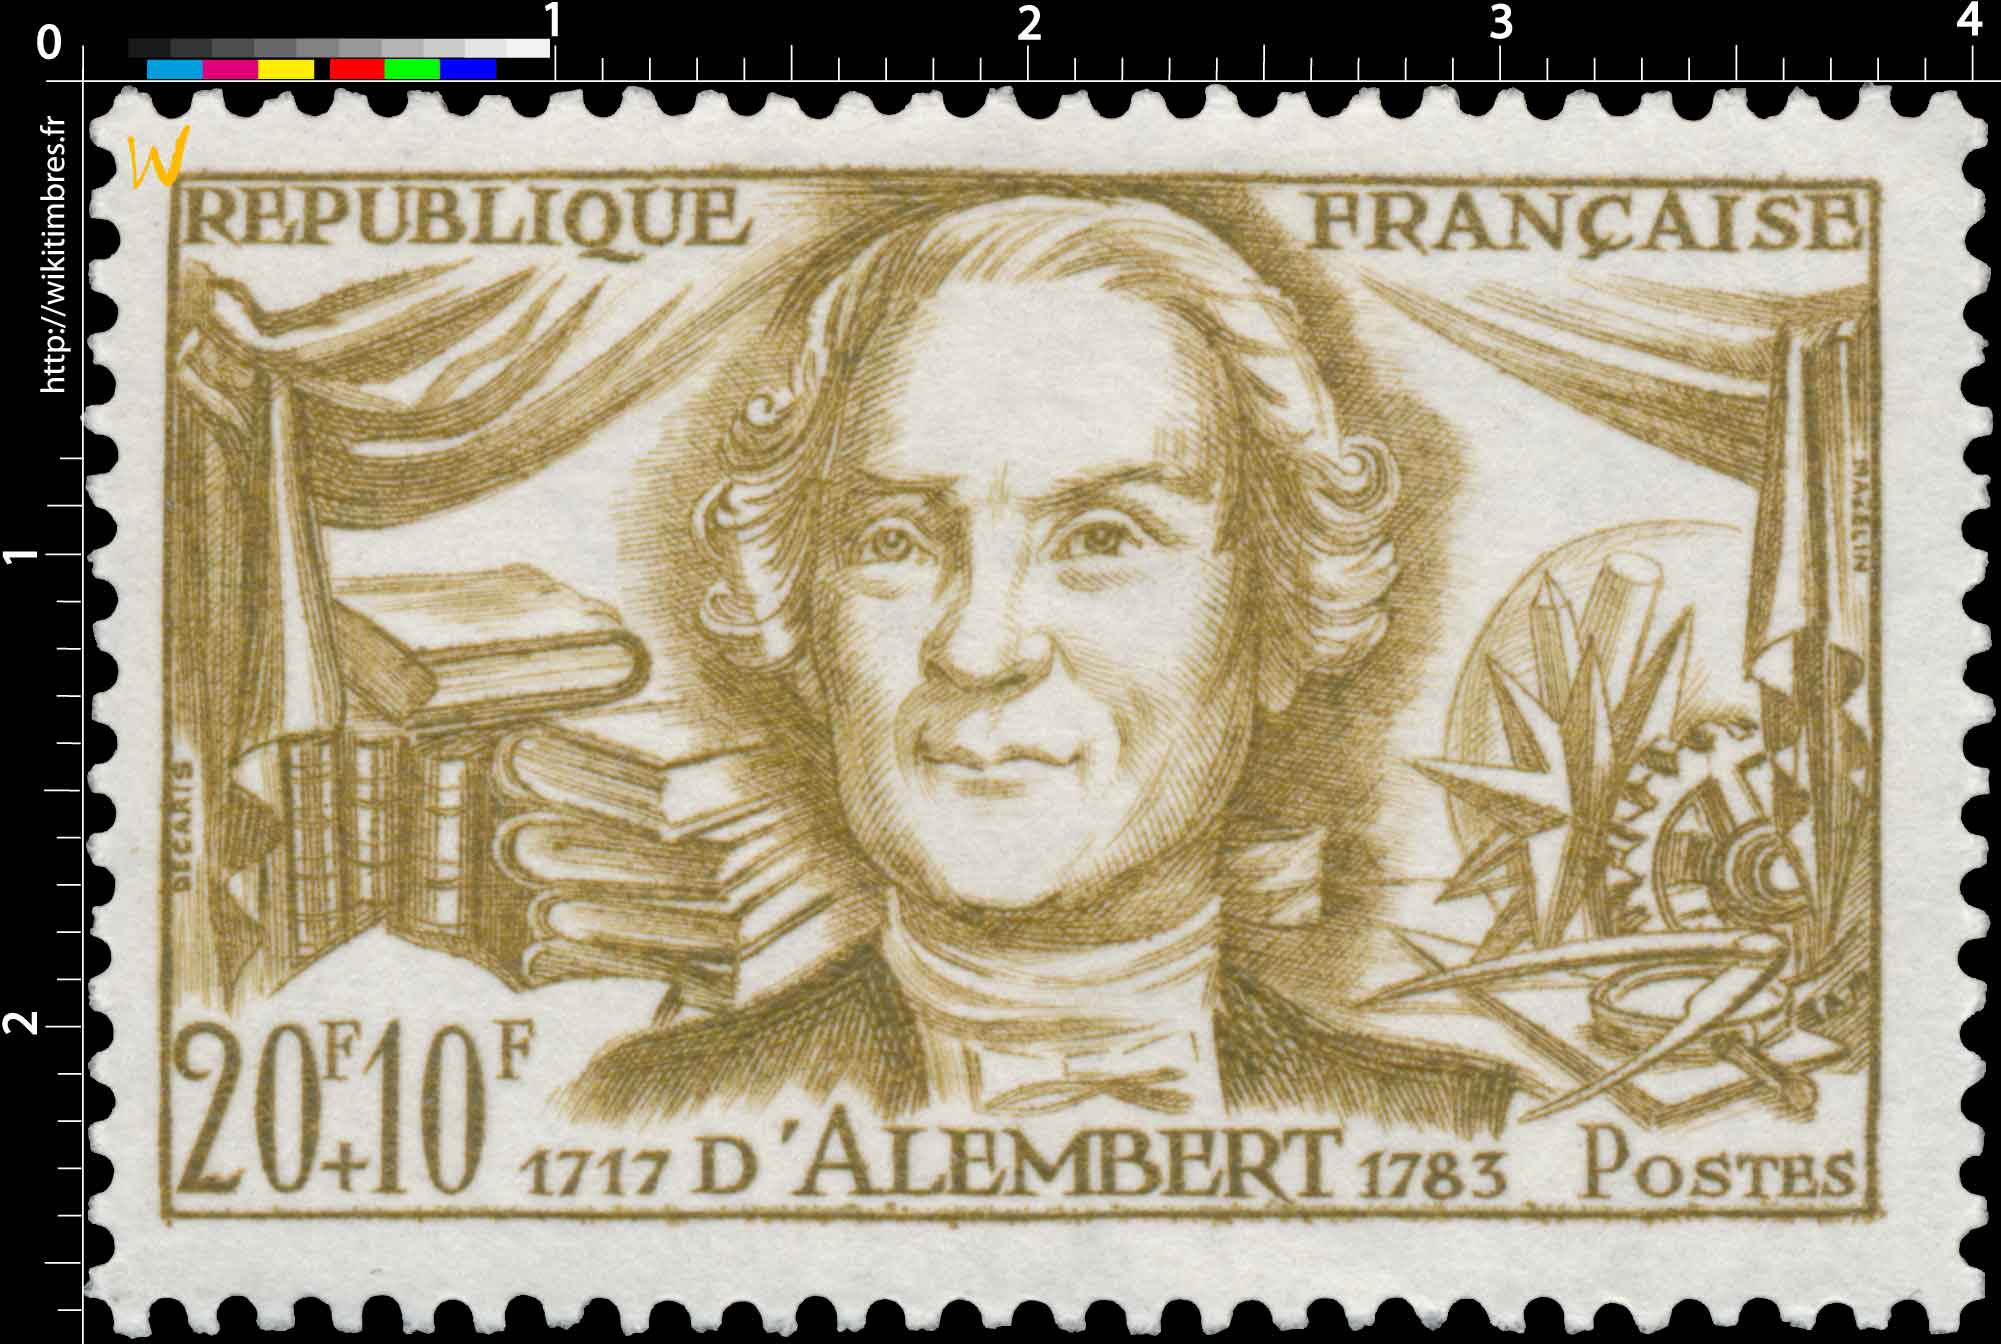 D'ALEMBERT 1717-1783